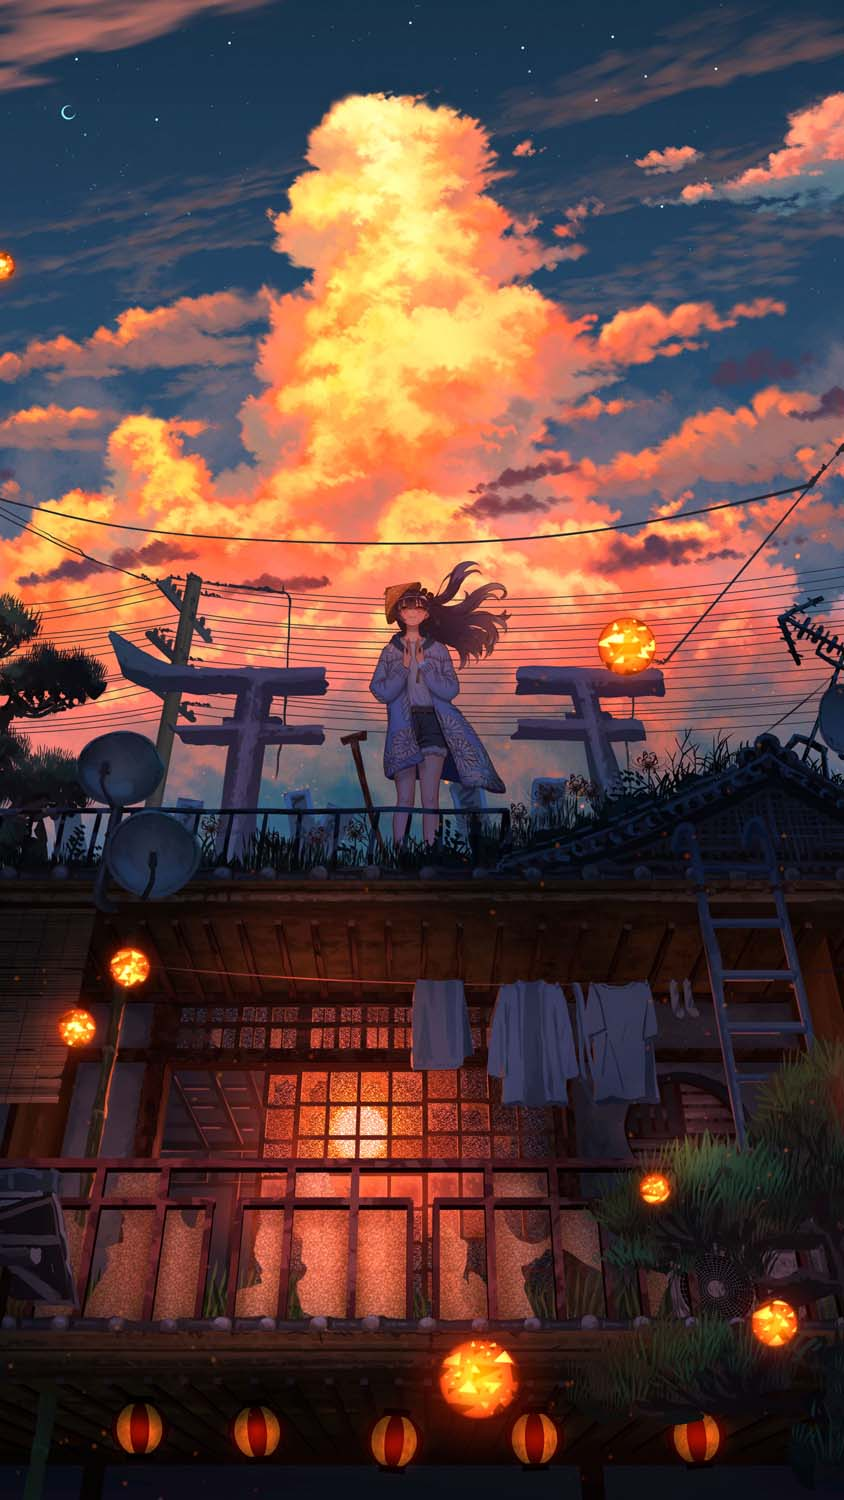 Anime Girl And Sky